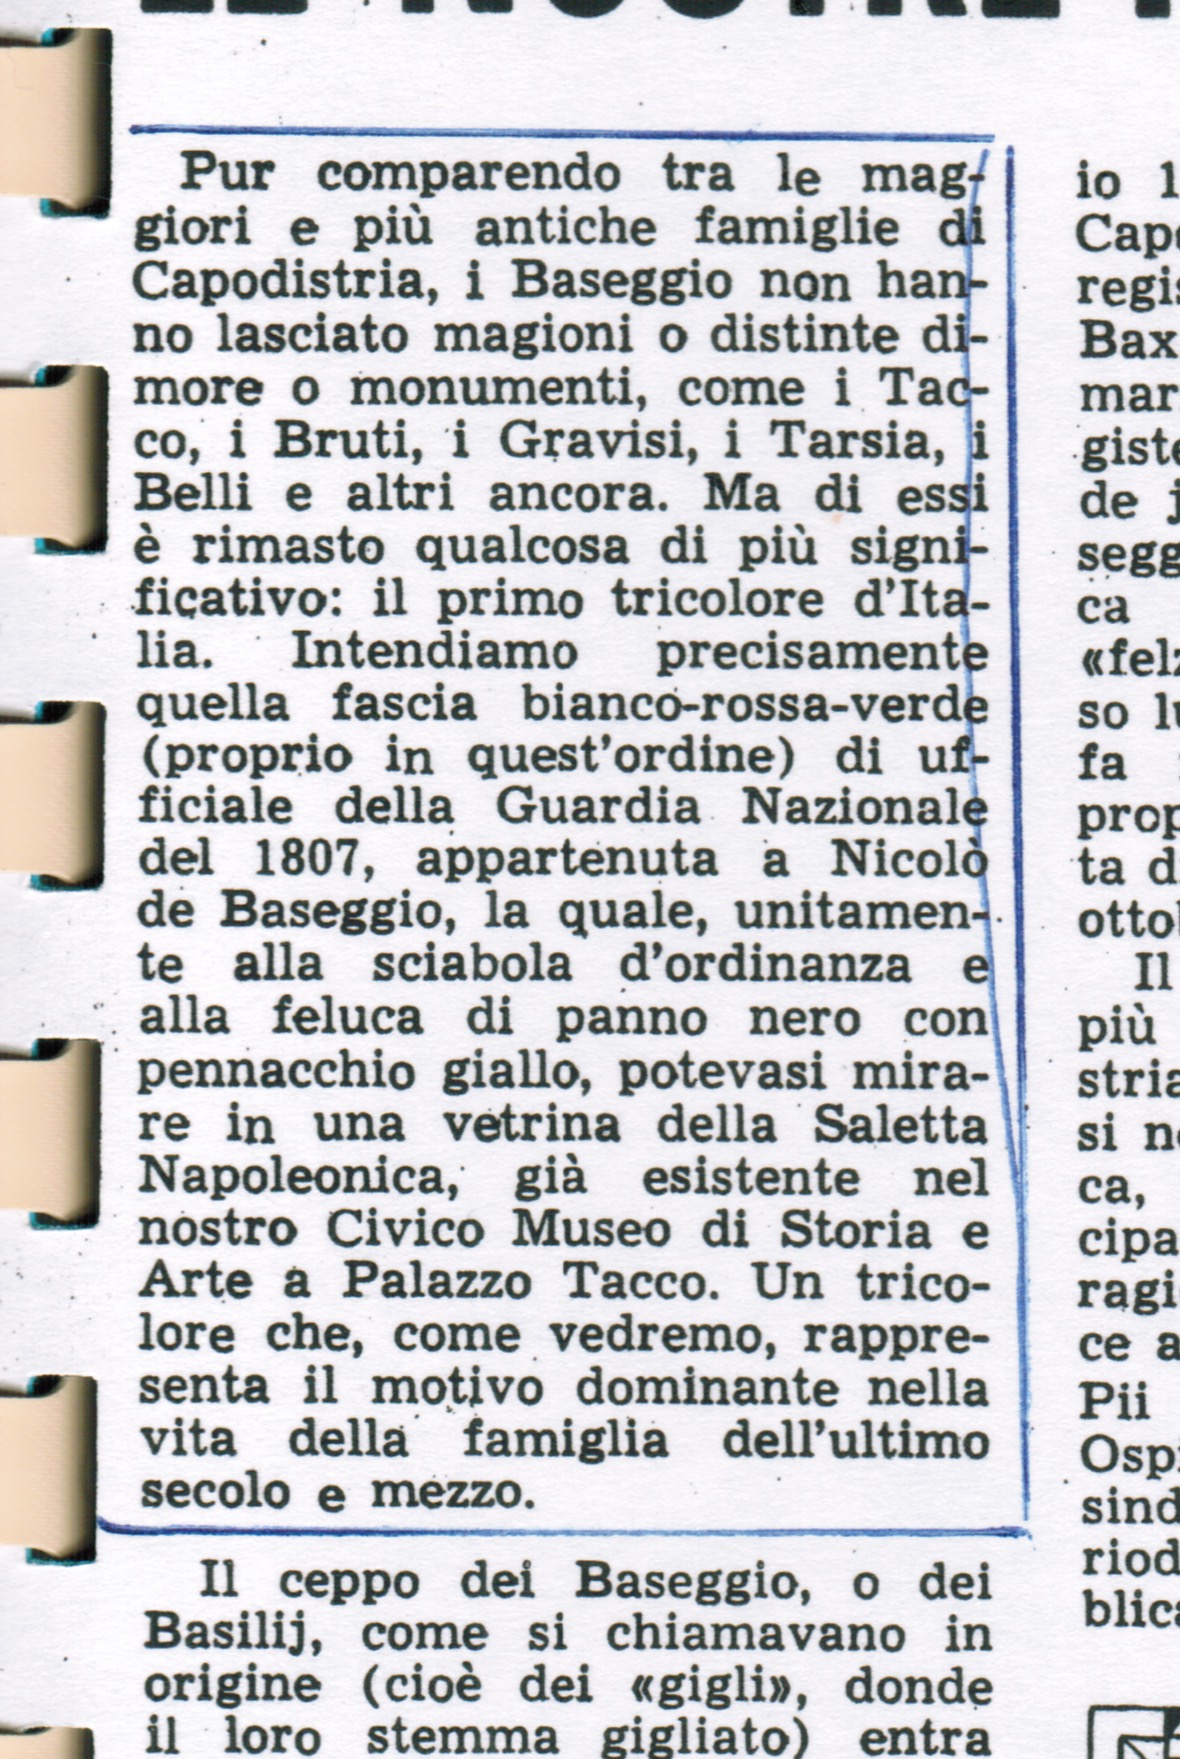 The Italian Tricolore - Introduced in 1807 by Nicolò de Baseggio